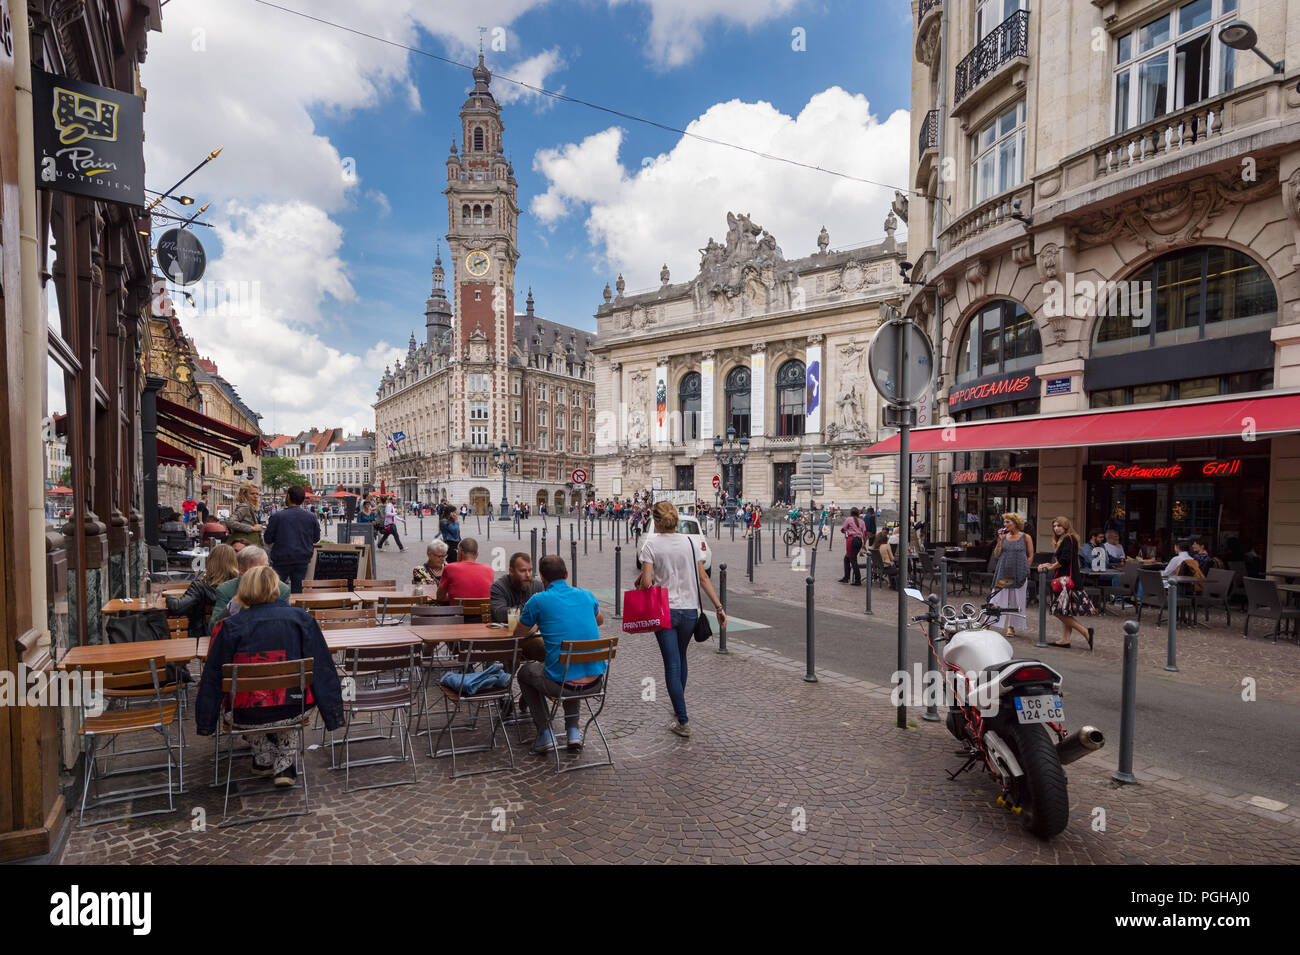 Lille, Francia - 15 Giugno 2018: la gente camminare su Pierre Mauroy street. Torre campanaria della Chambre de Commerce in background. Foto Stock